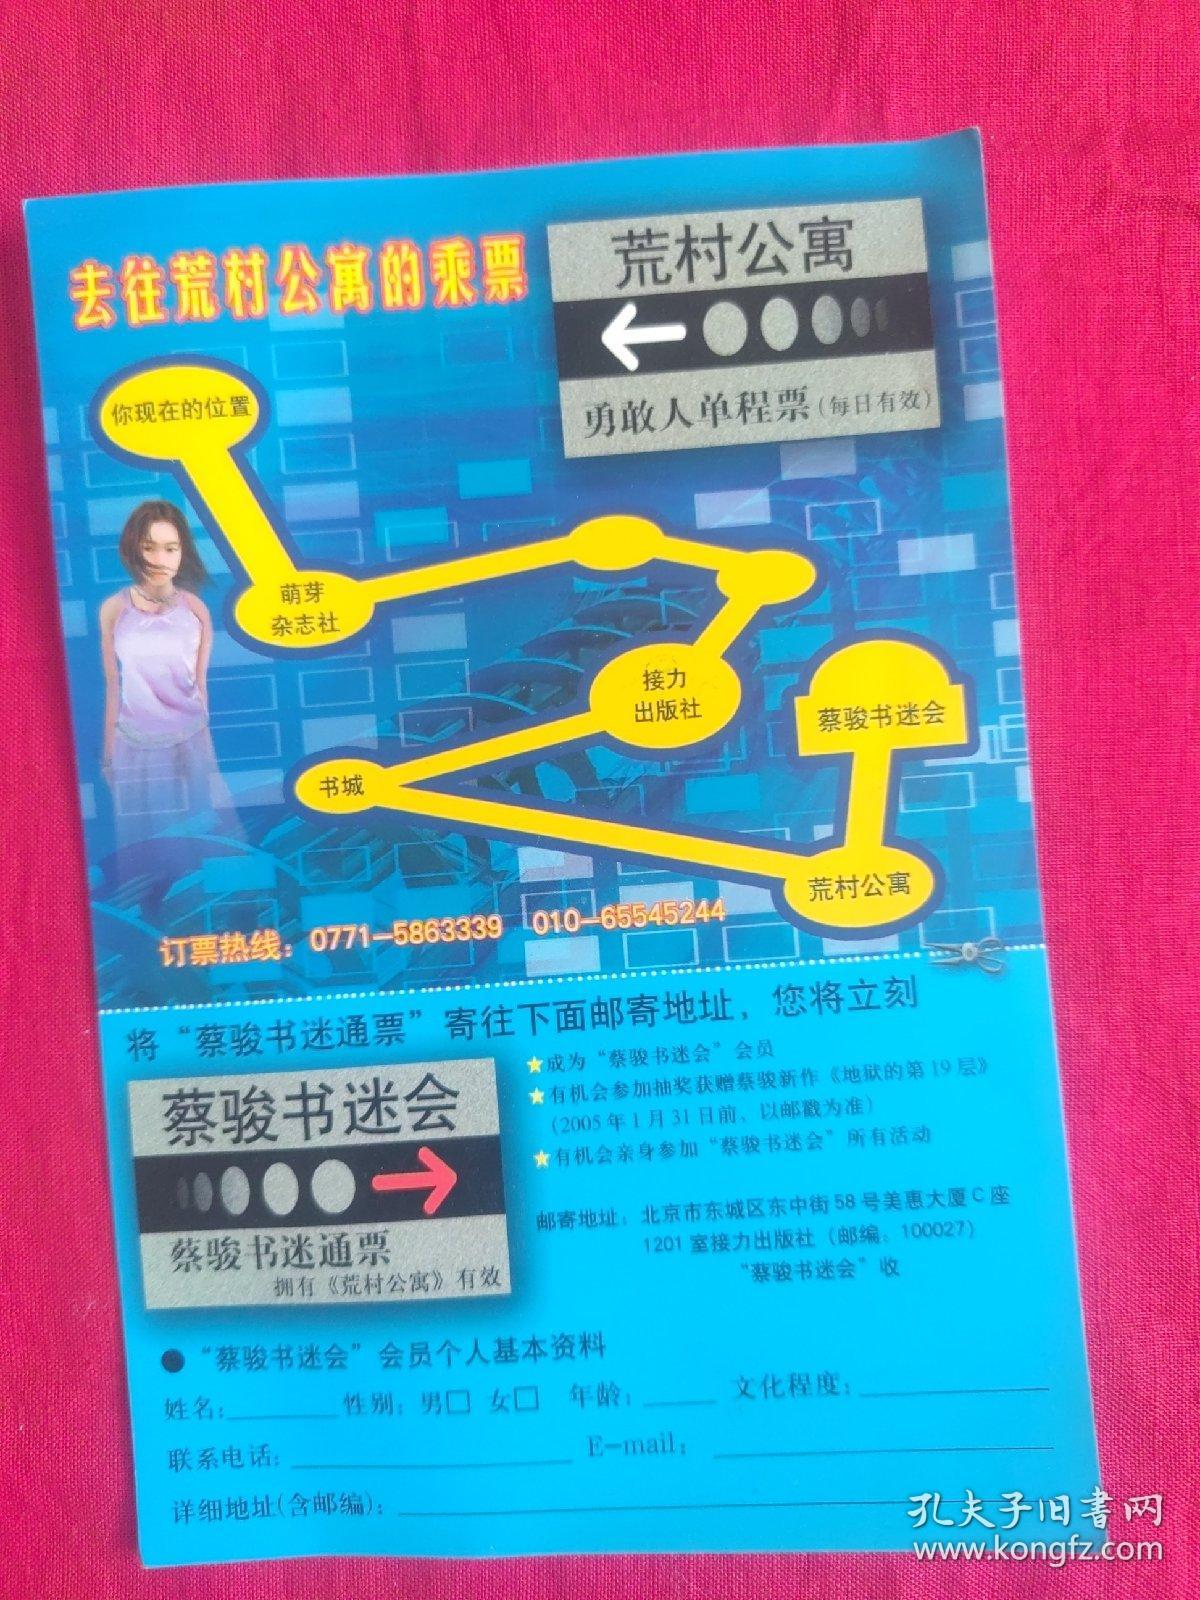 北京荒村公寓《蔡骏书迷会》
会员个人基本资料卡